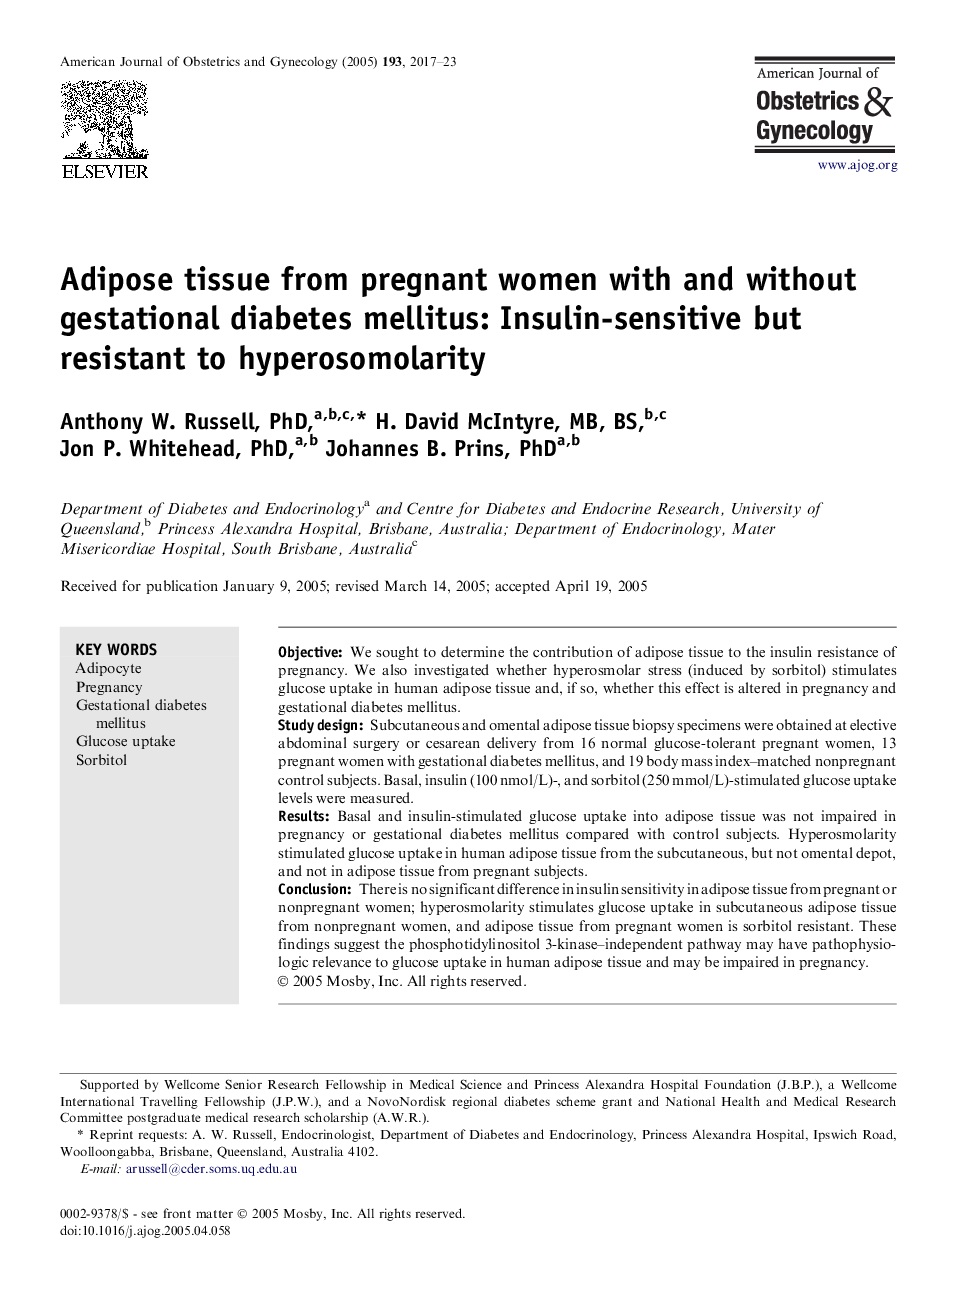 بافت چربی از زنان باردار با و بدون دیابت بارداری: حساسیت به انسولین اما مقاوم در برابر hyperosomolarity